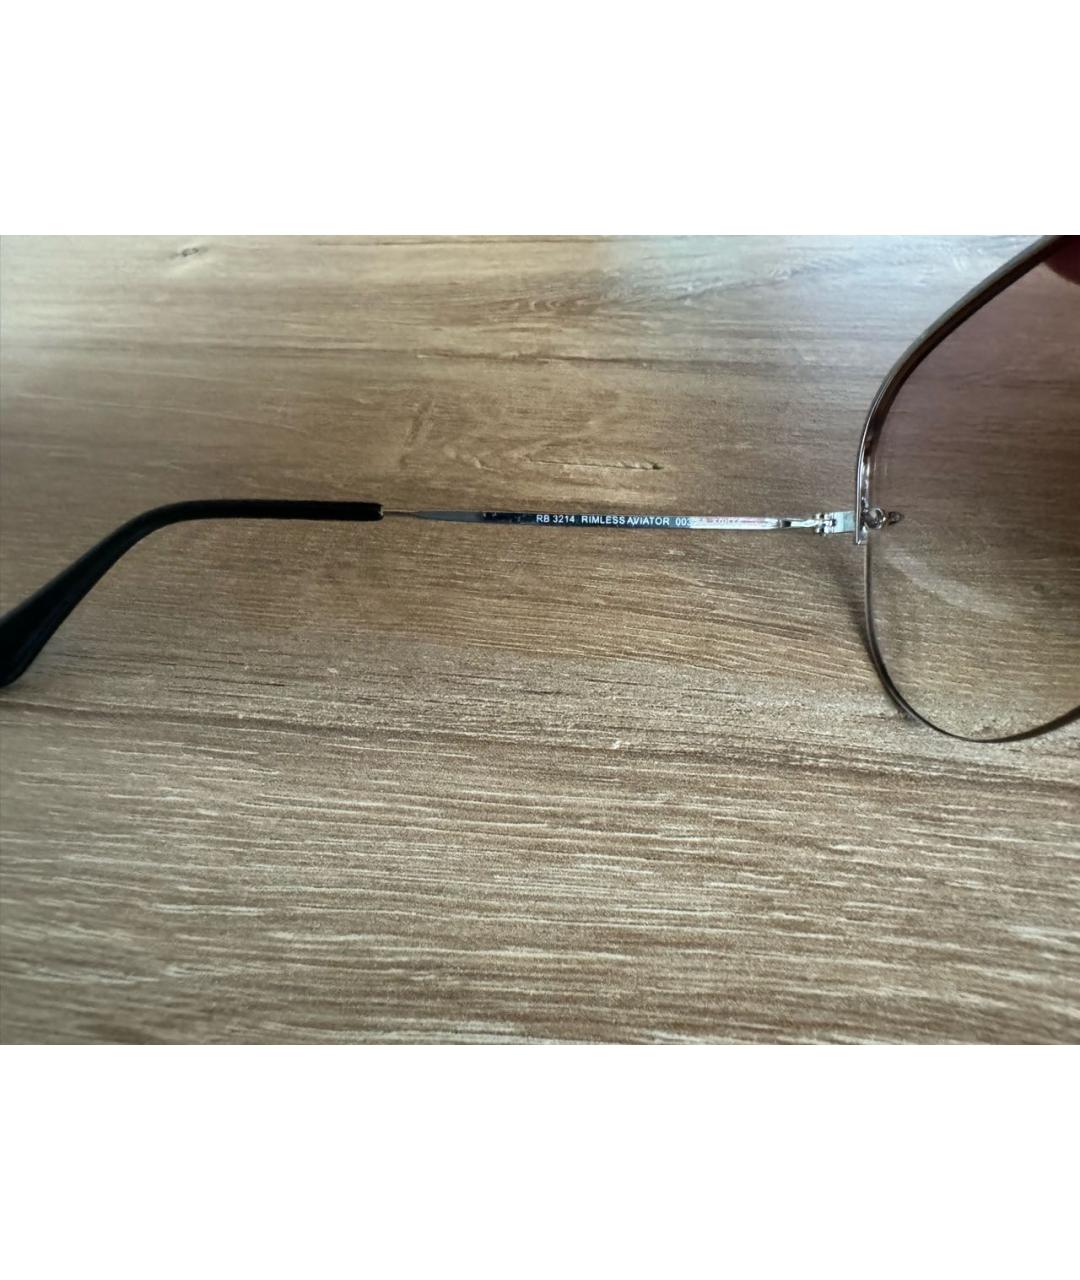 RAY BAN Розовые металлические солнцезащитные очки, фото 4